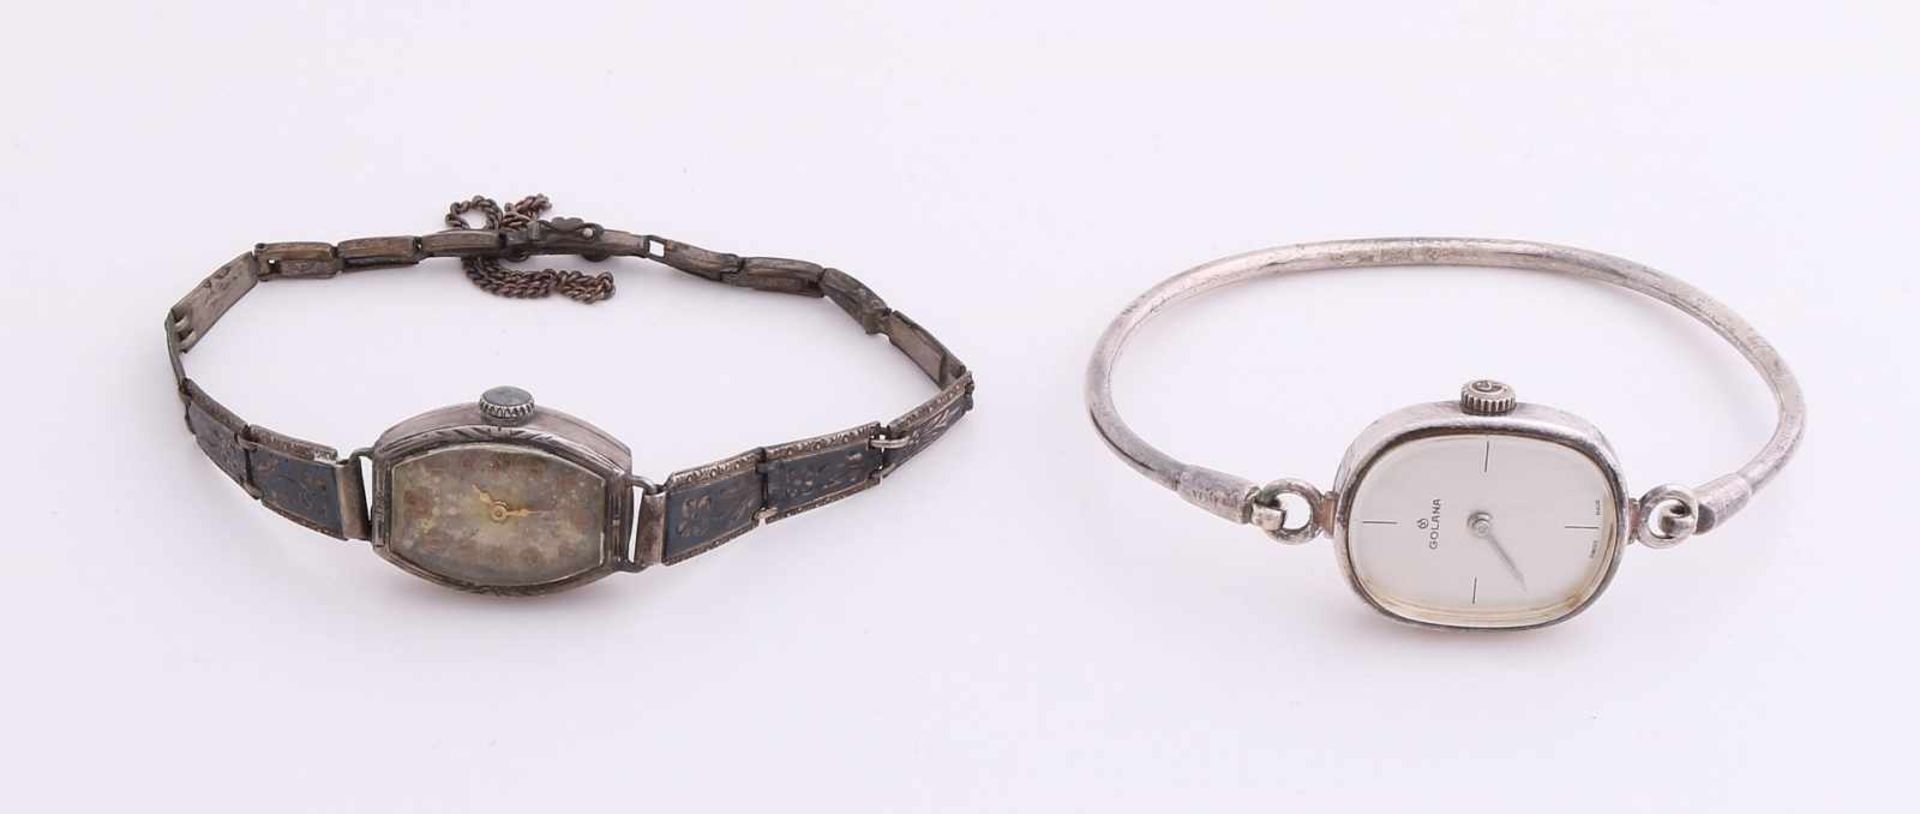 Zwei silberne Uhren; eine ovale Uhr, 925/000, mit starrem runden Armband, Marke Golana,